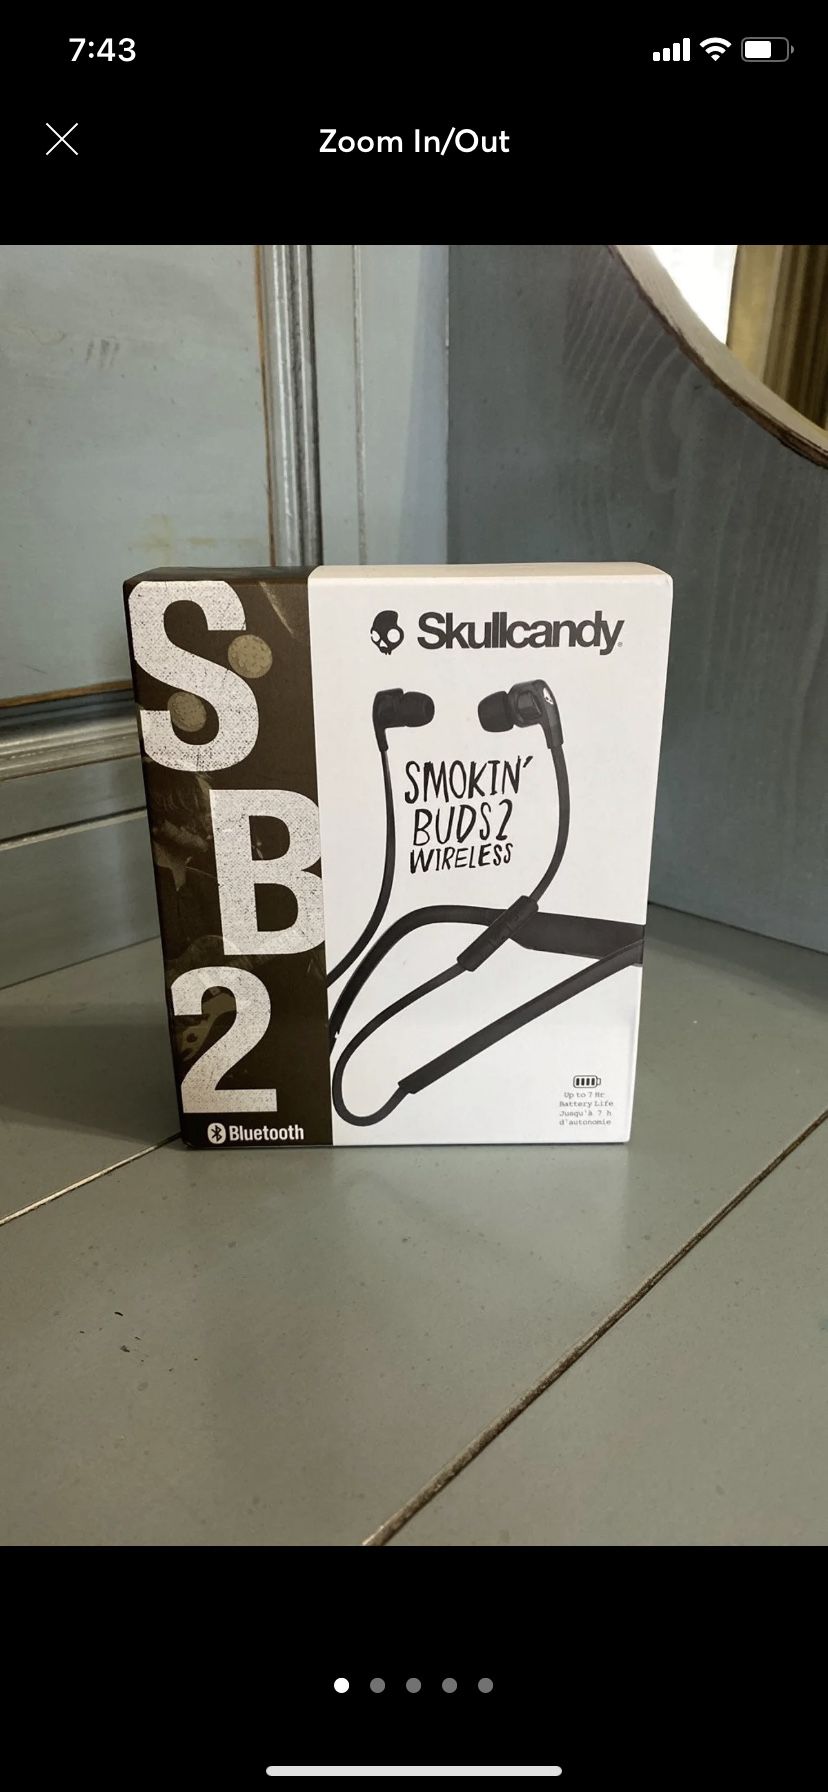 Skullcandy smokin' buds 2 wireless